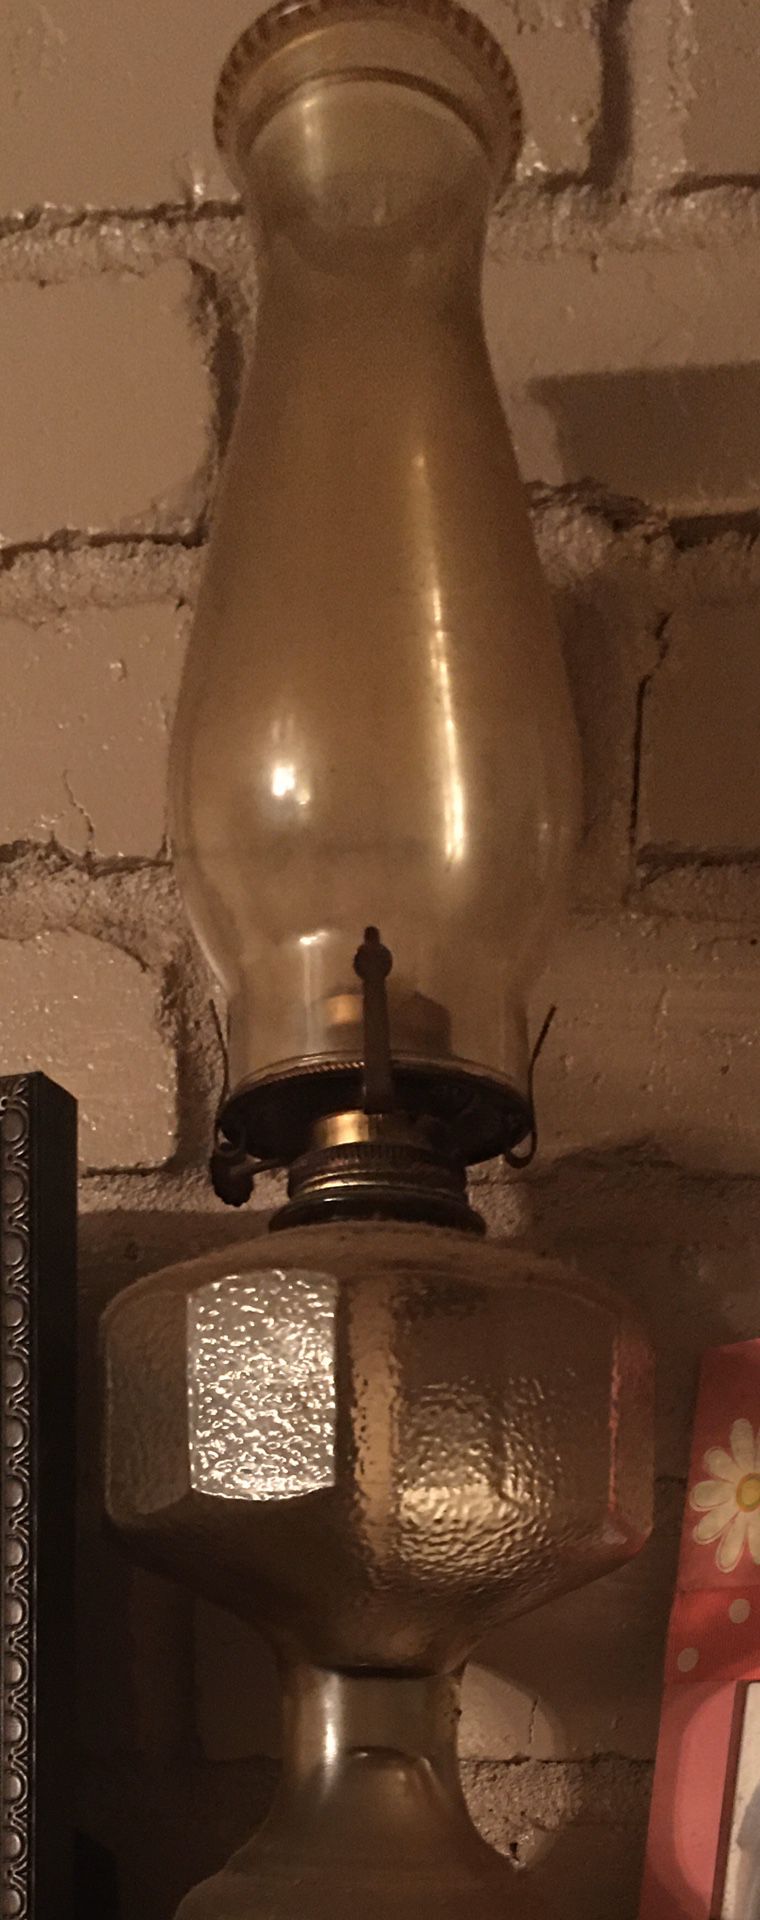 Kerosene vintage oil lamp